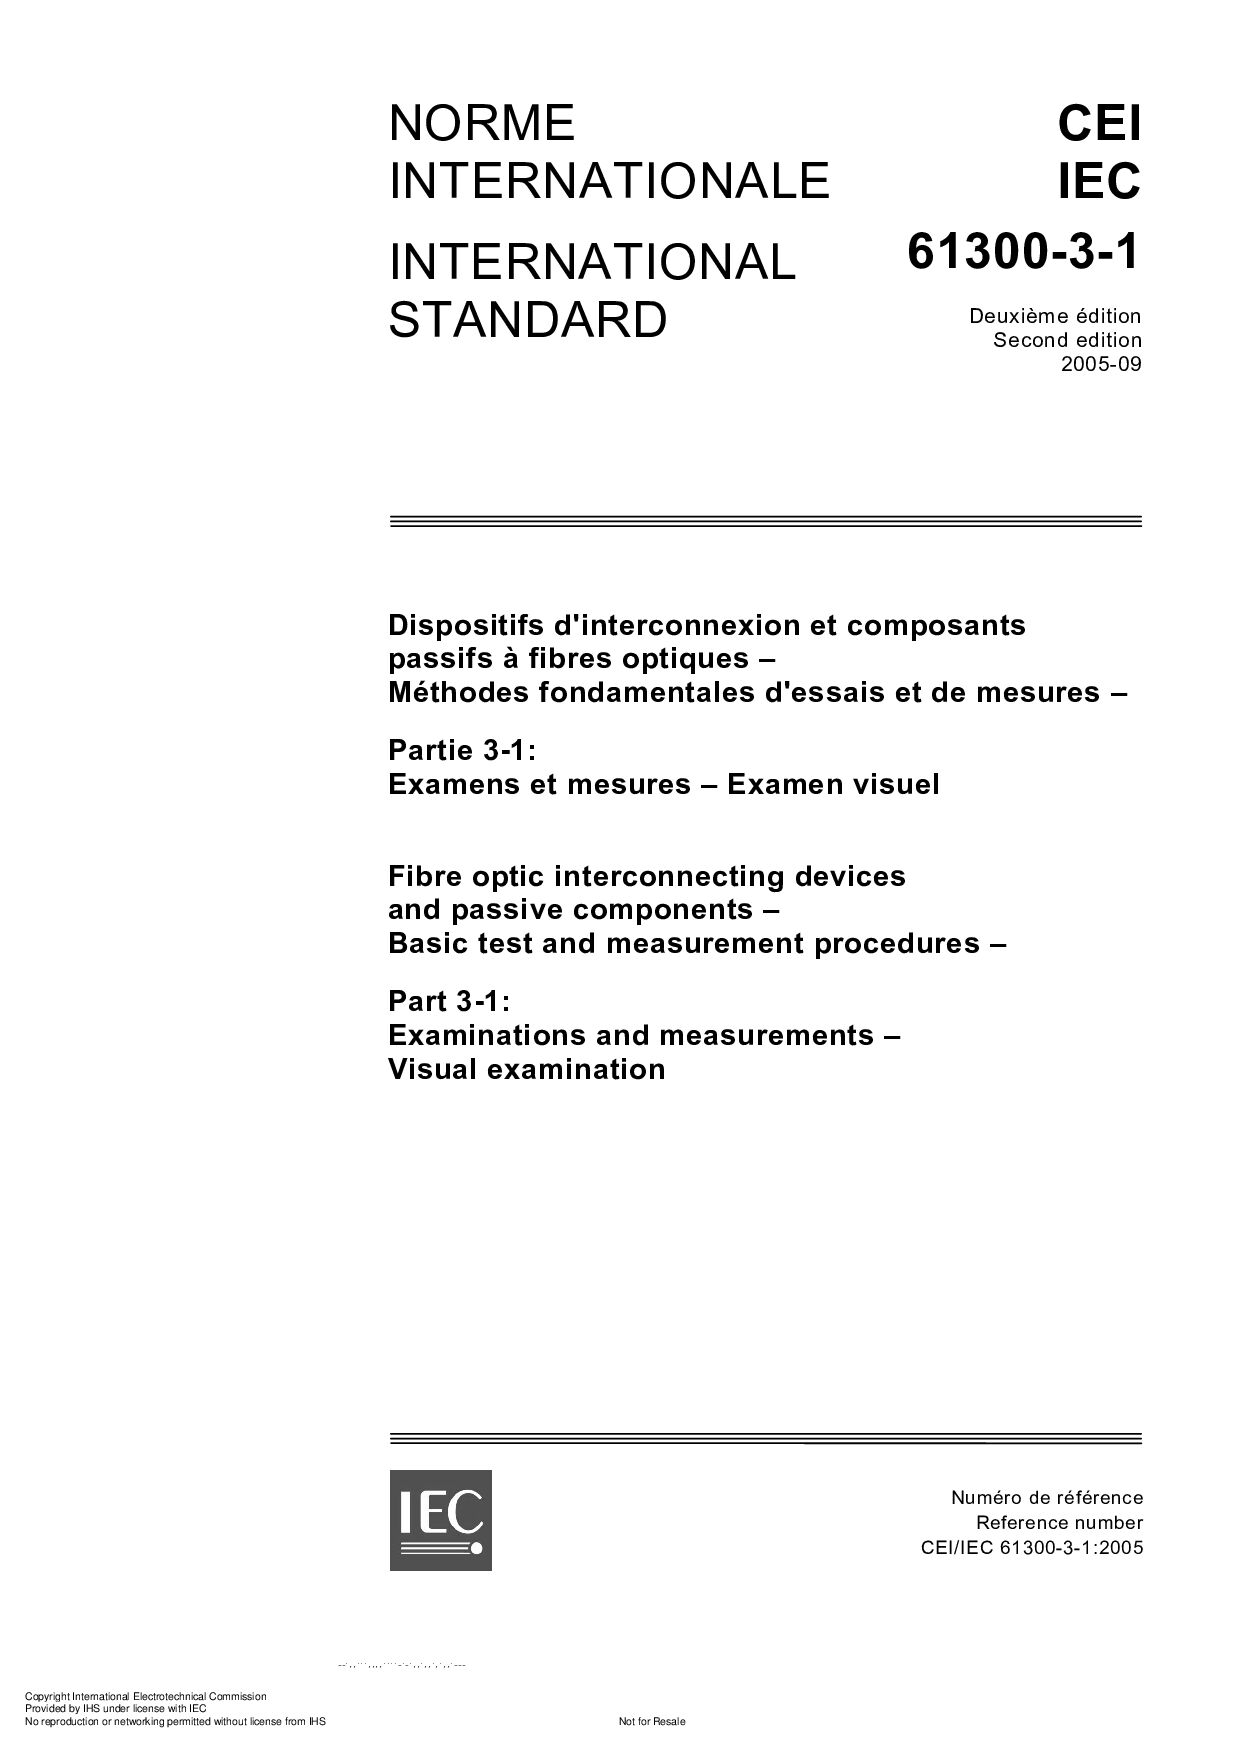 IEC 61300-3-1:2005